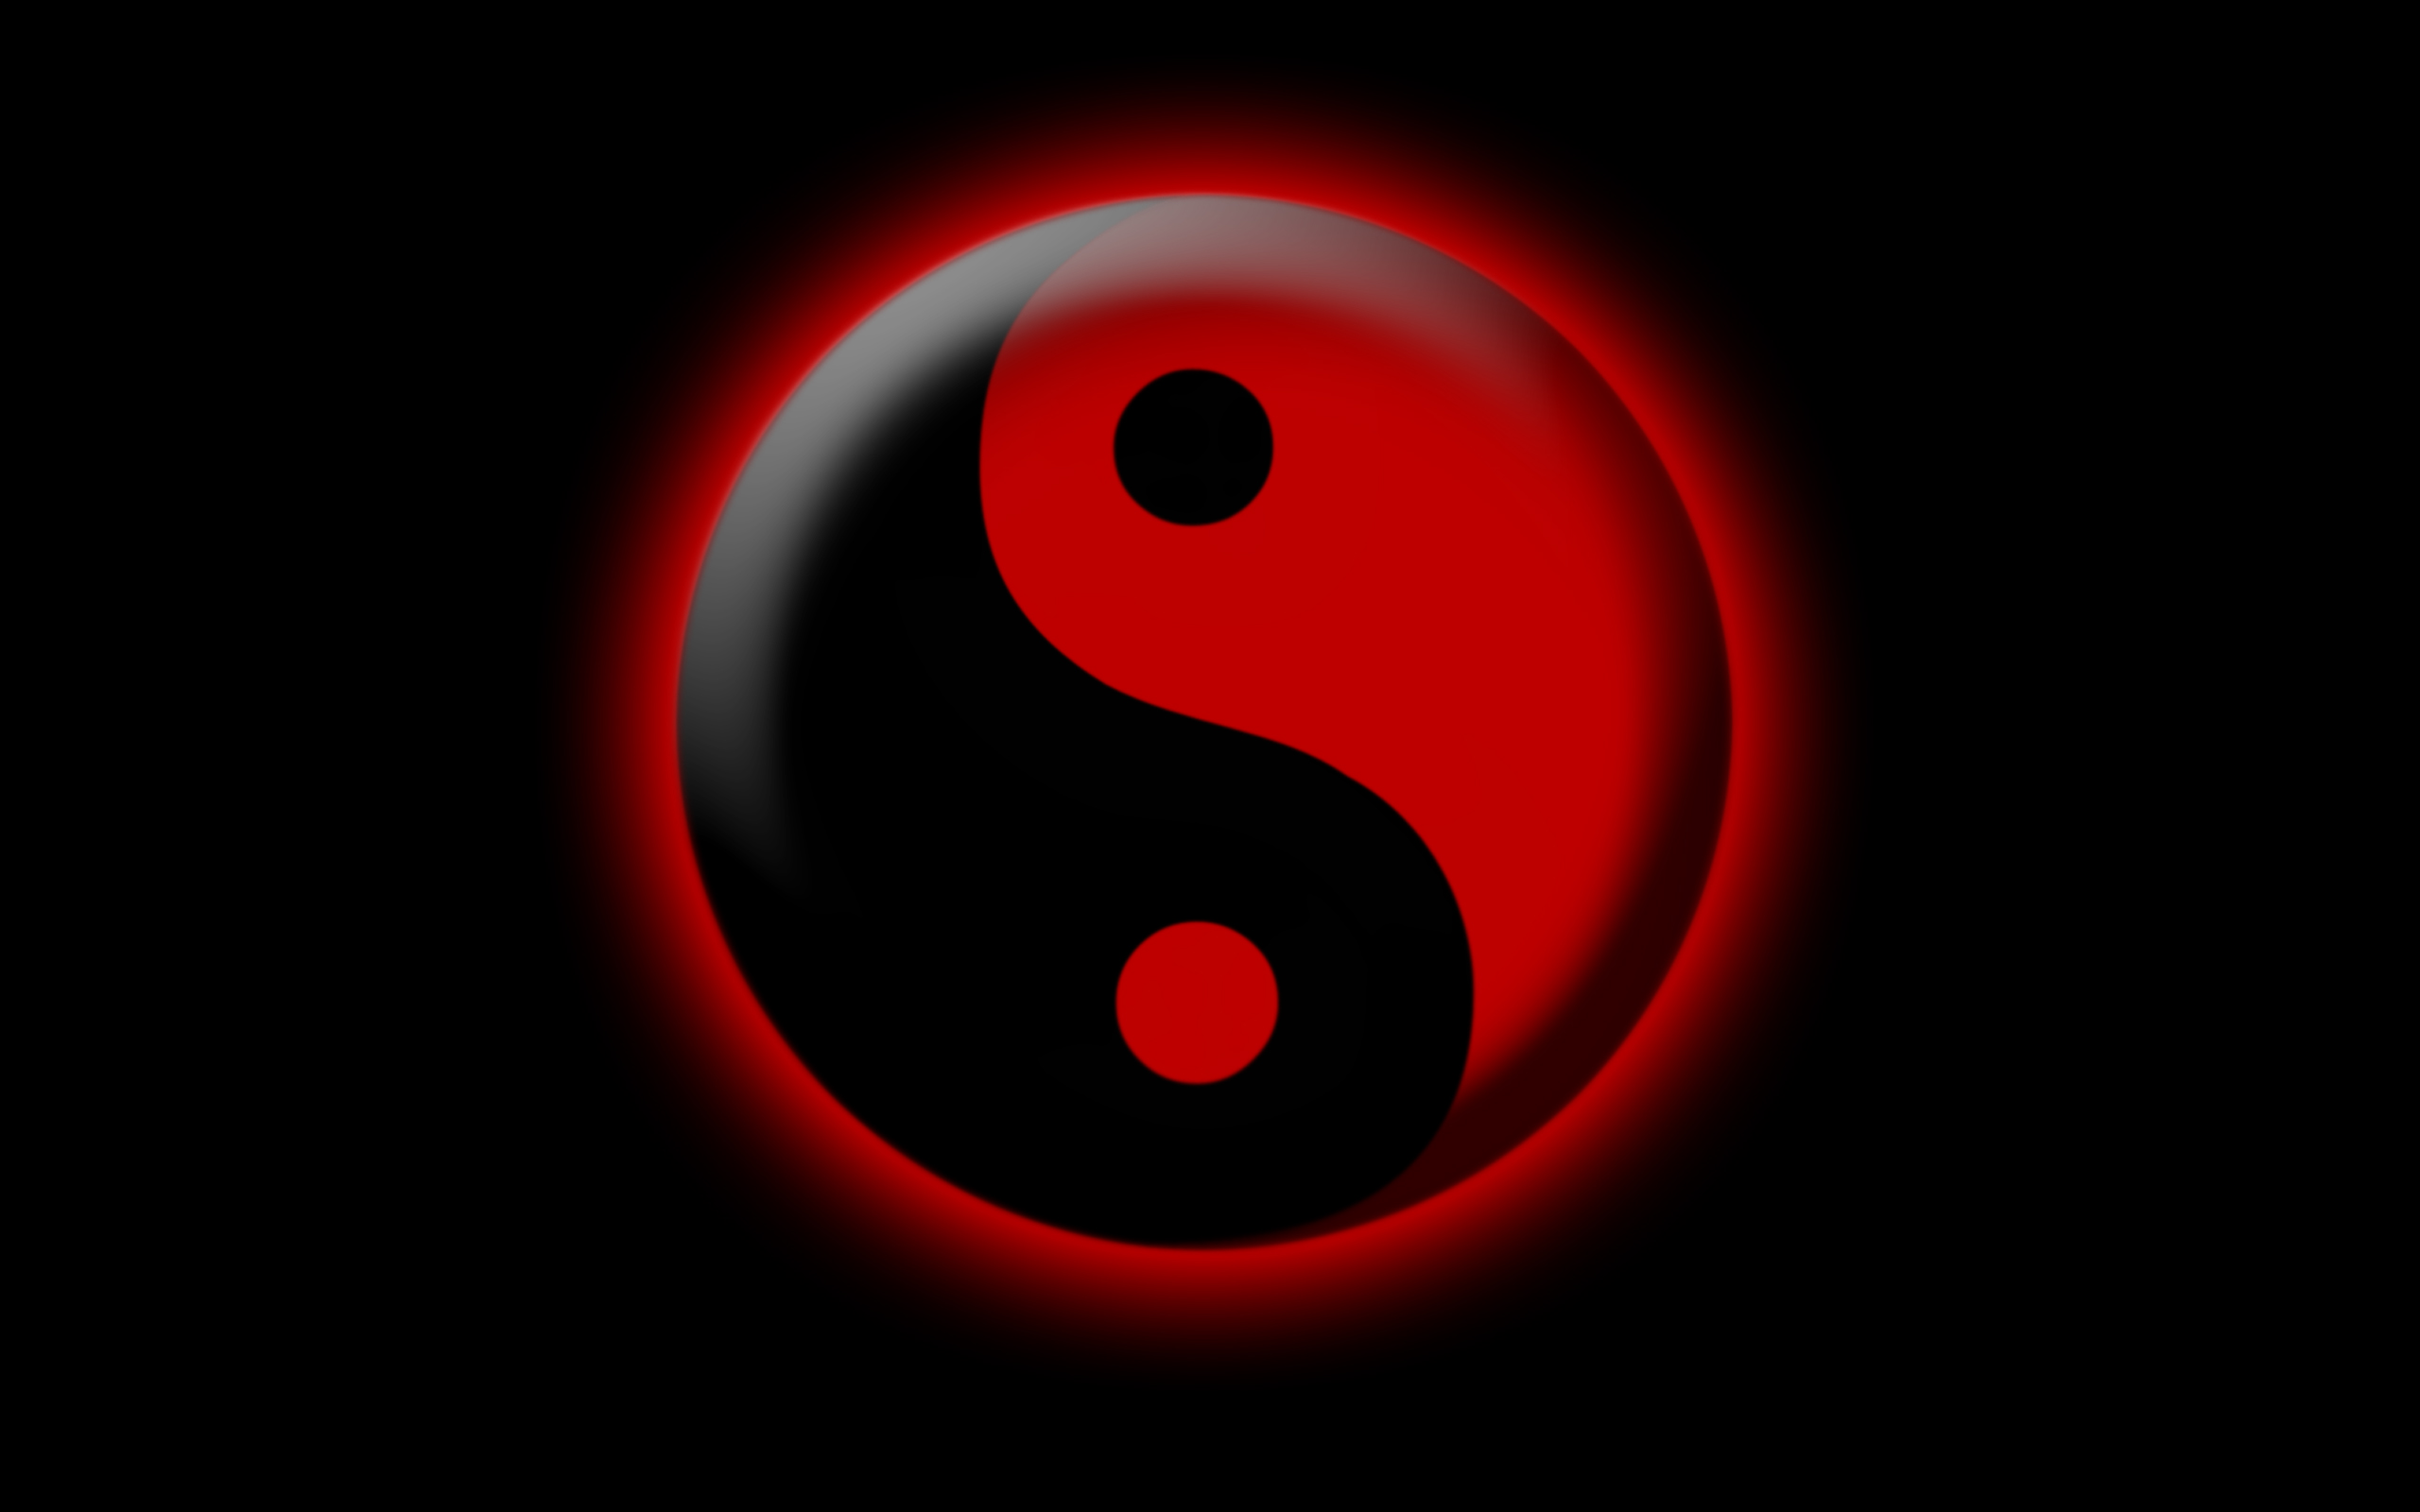 Đỏ và đen, hai màu sắc đối lập nhưng khi phối hợp lại tạo ra một bức tranh tuyệt đẹp của yin và yang. Hình nền yin yang màu đỏ đen sẽ làm cho màn hình của bạn trở nên nổi bật, đầy sức mạnh và cân bằng từng chi tiết.